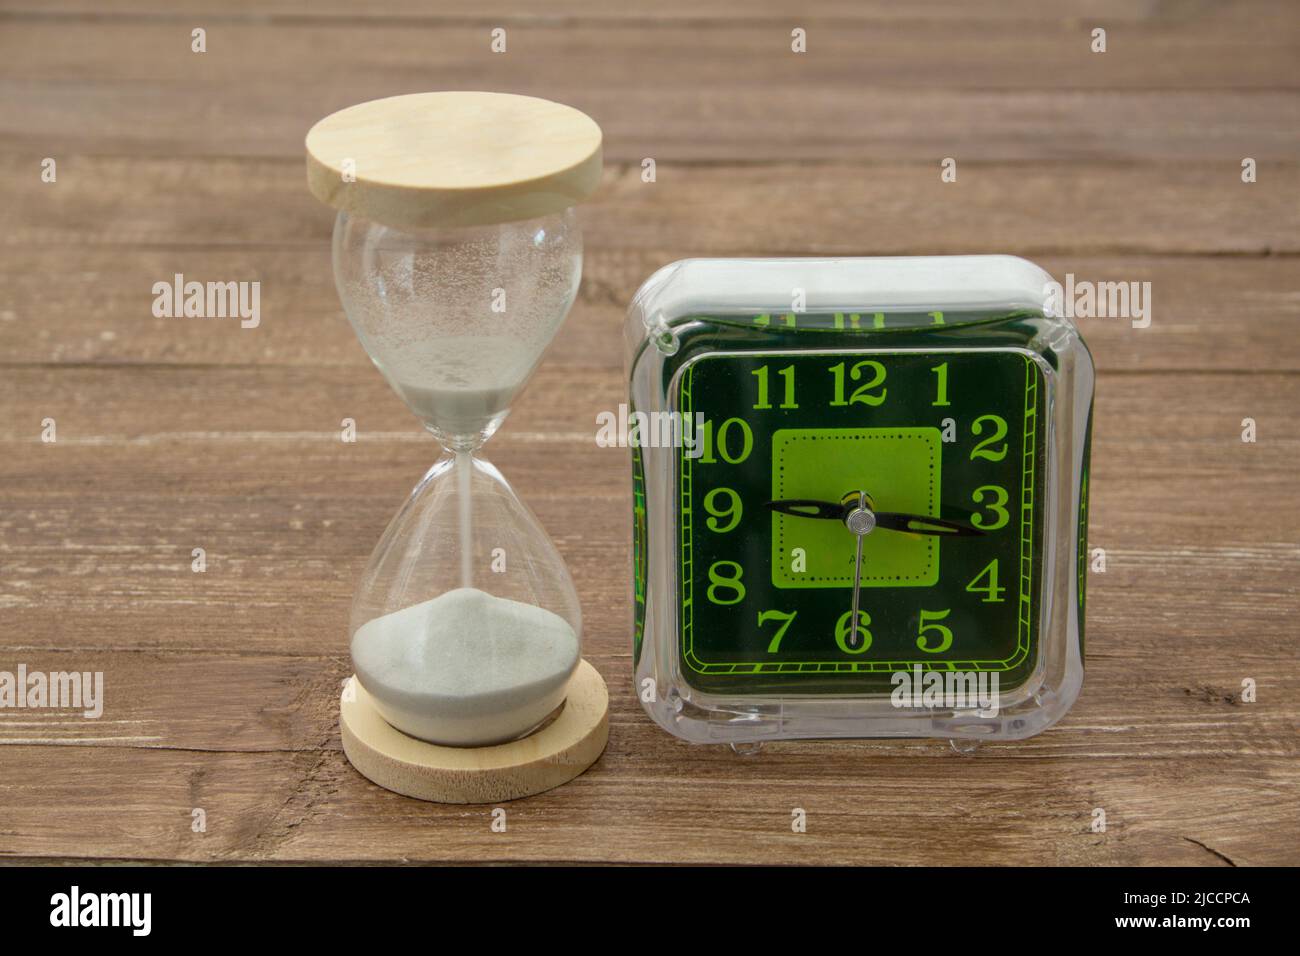 Image d'un sablier et d'une horloge de table. Référence au passage du temps Banque D'Images